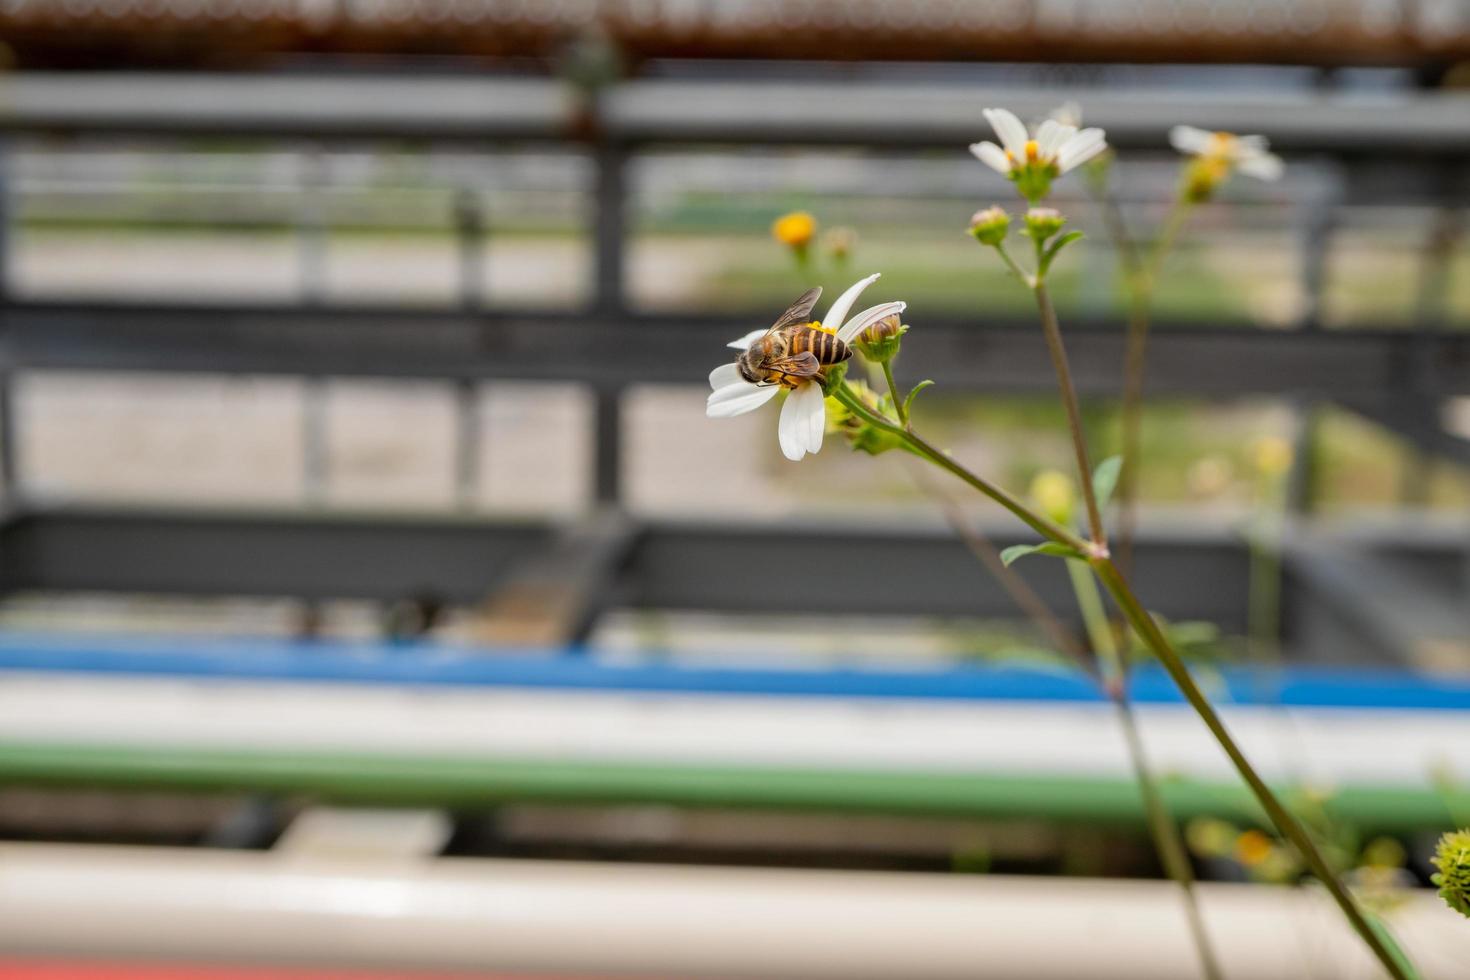 Honig Biene nehmen Nektar auf das Wiese Blume wann Tag Zeit. das Foto ist geeignet zu verwenden zum Tier wild Leben Hintergrund, Frühling Poster und Natur Inhalt Medien.